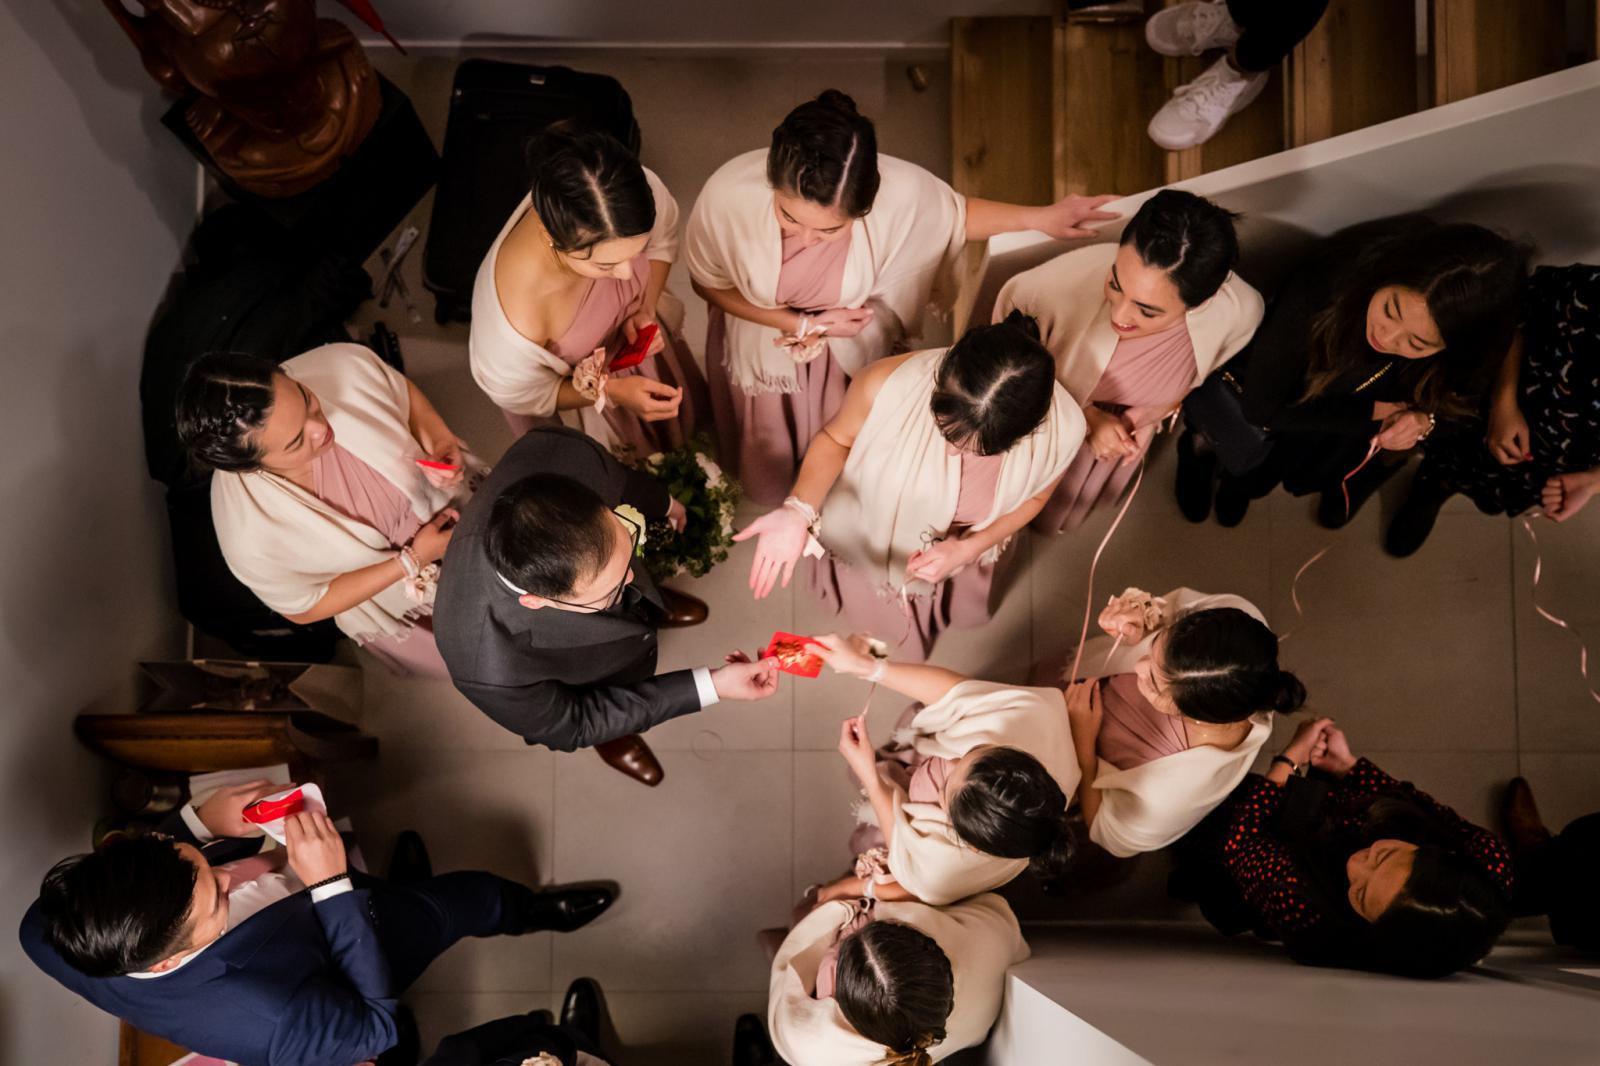 Chinese door games at bij een bruiloft